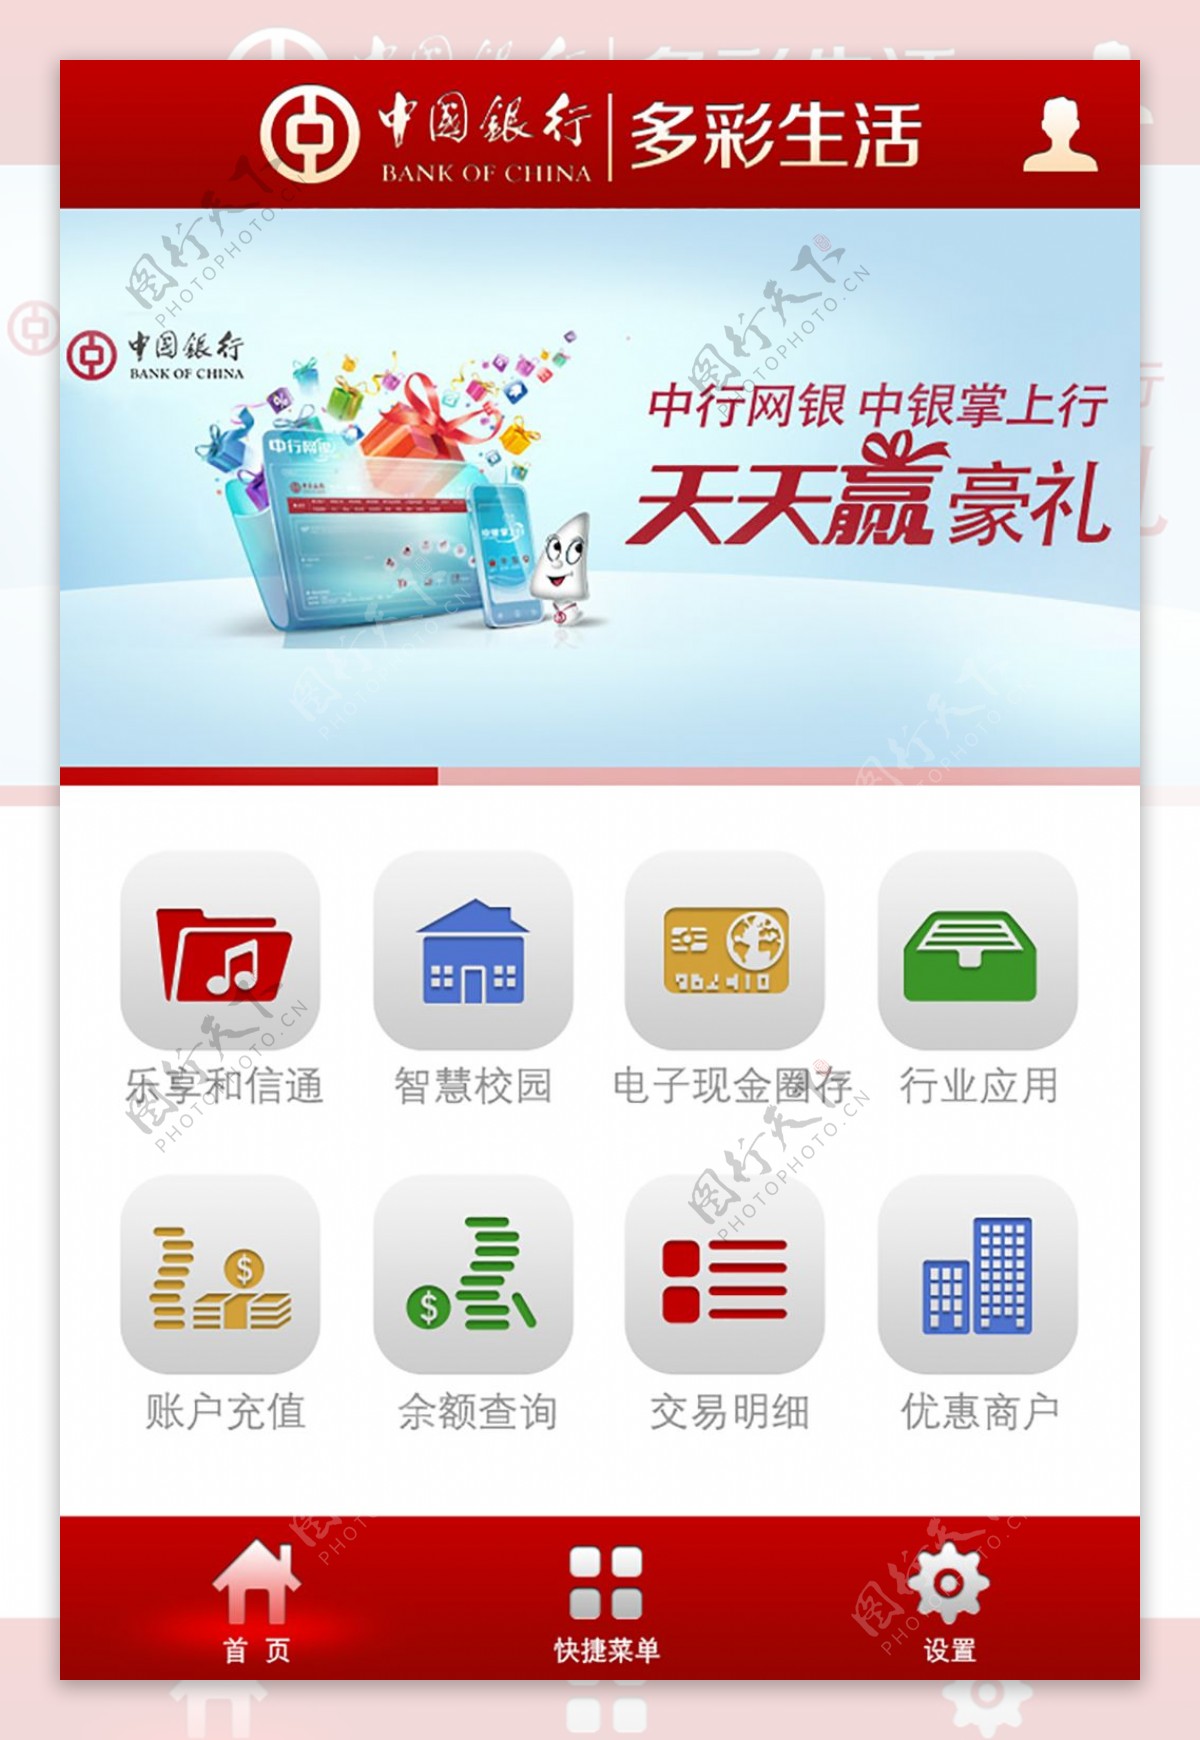 中国银行多彩生活手机客户端